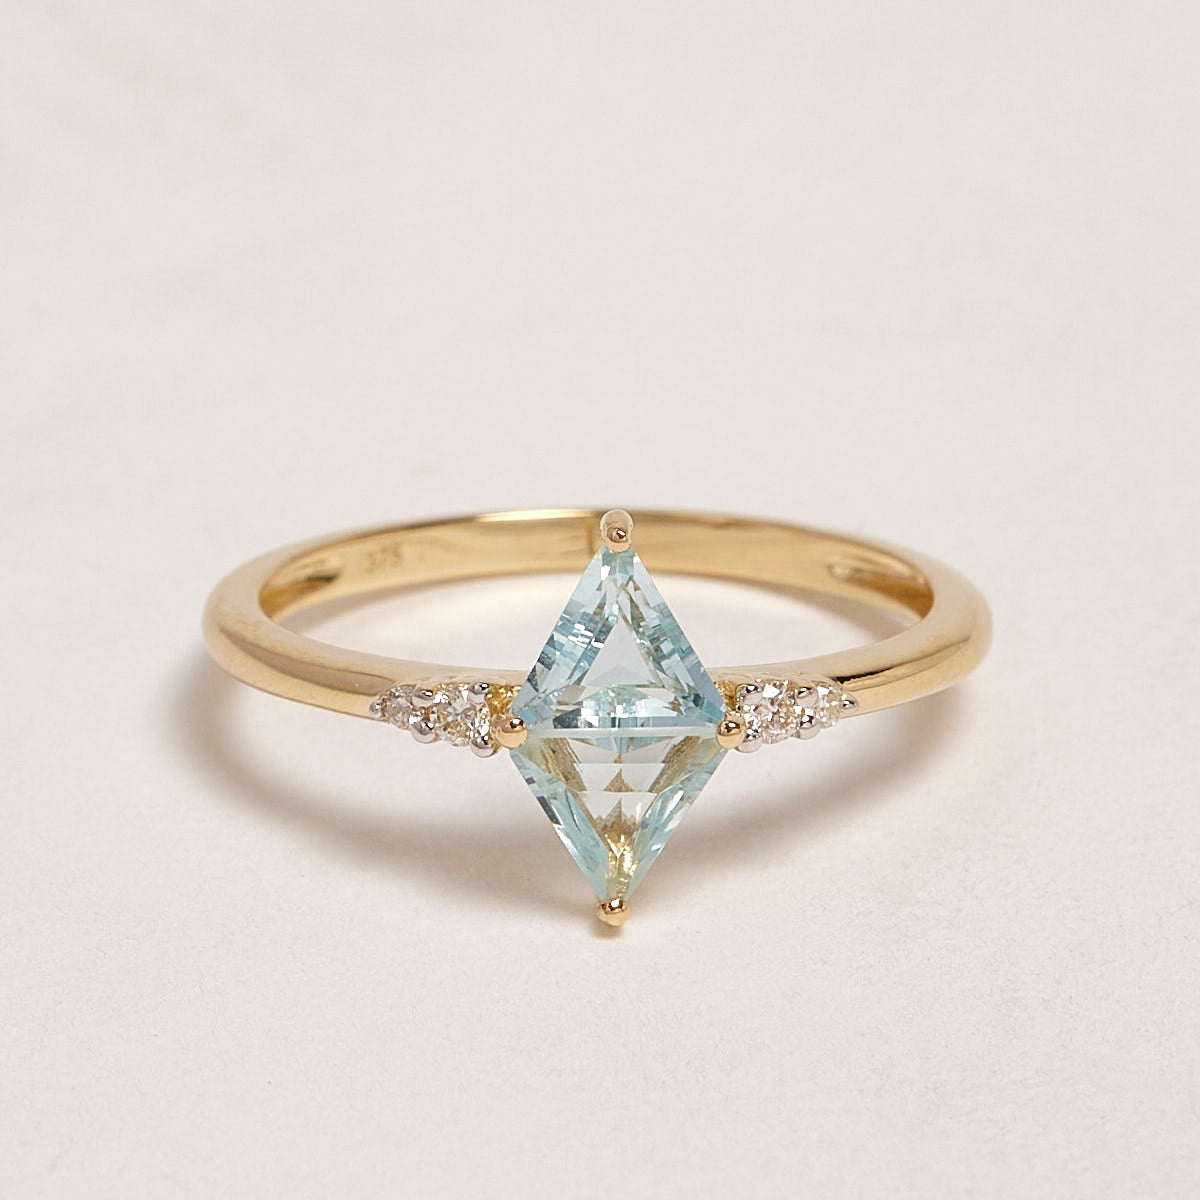 Hestia 9ct Yellow Gold Aquamarine & Diamond Ring